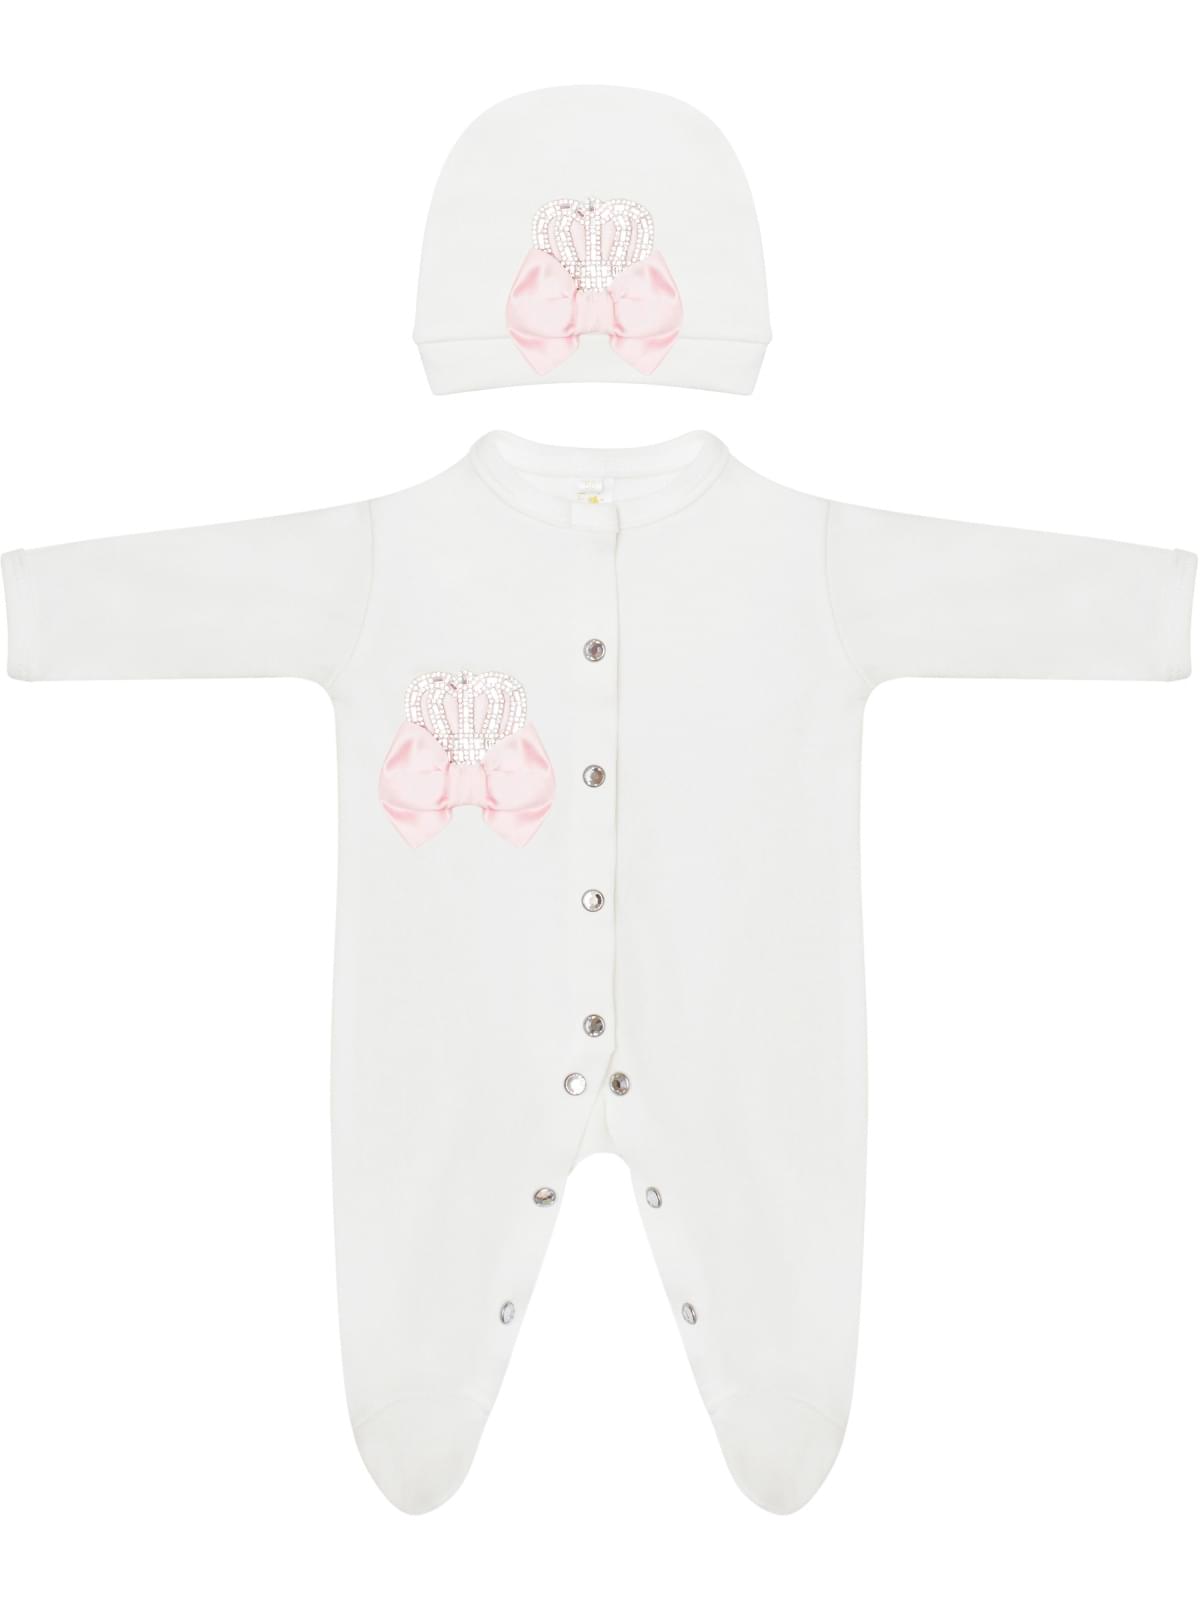 Комплект на выпискудетский детский Luxury Baby Корона, белый; розовый, 62